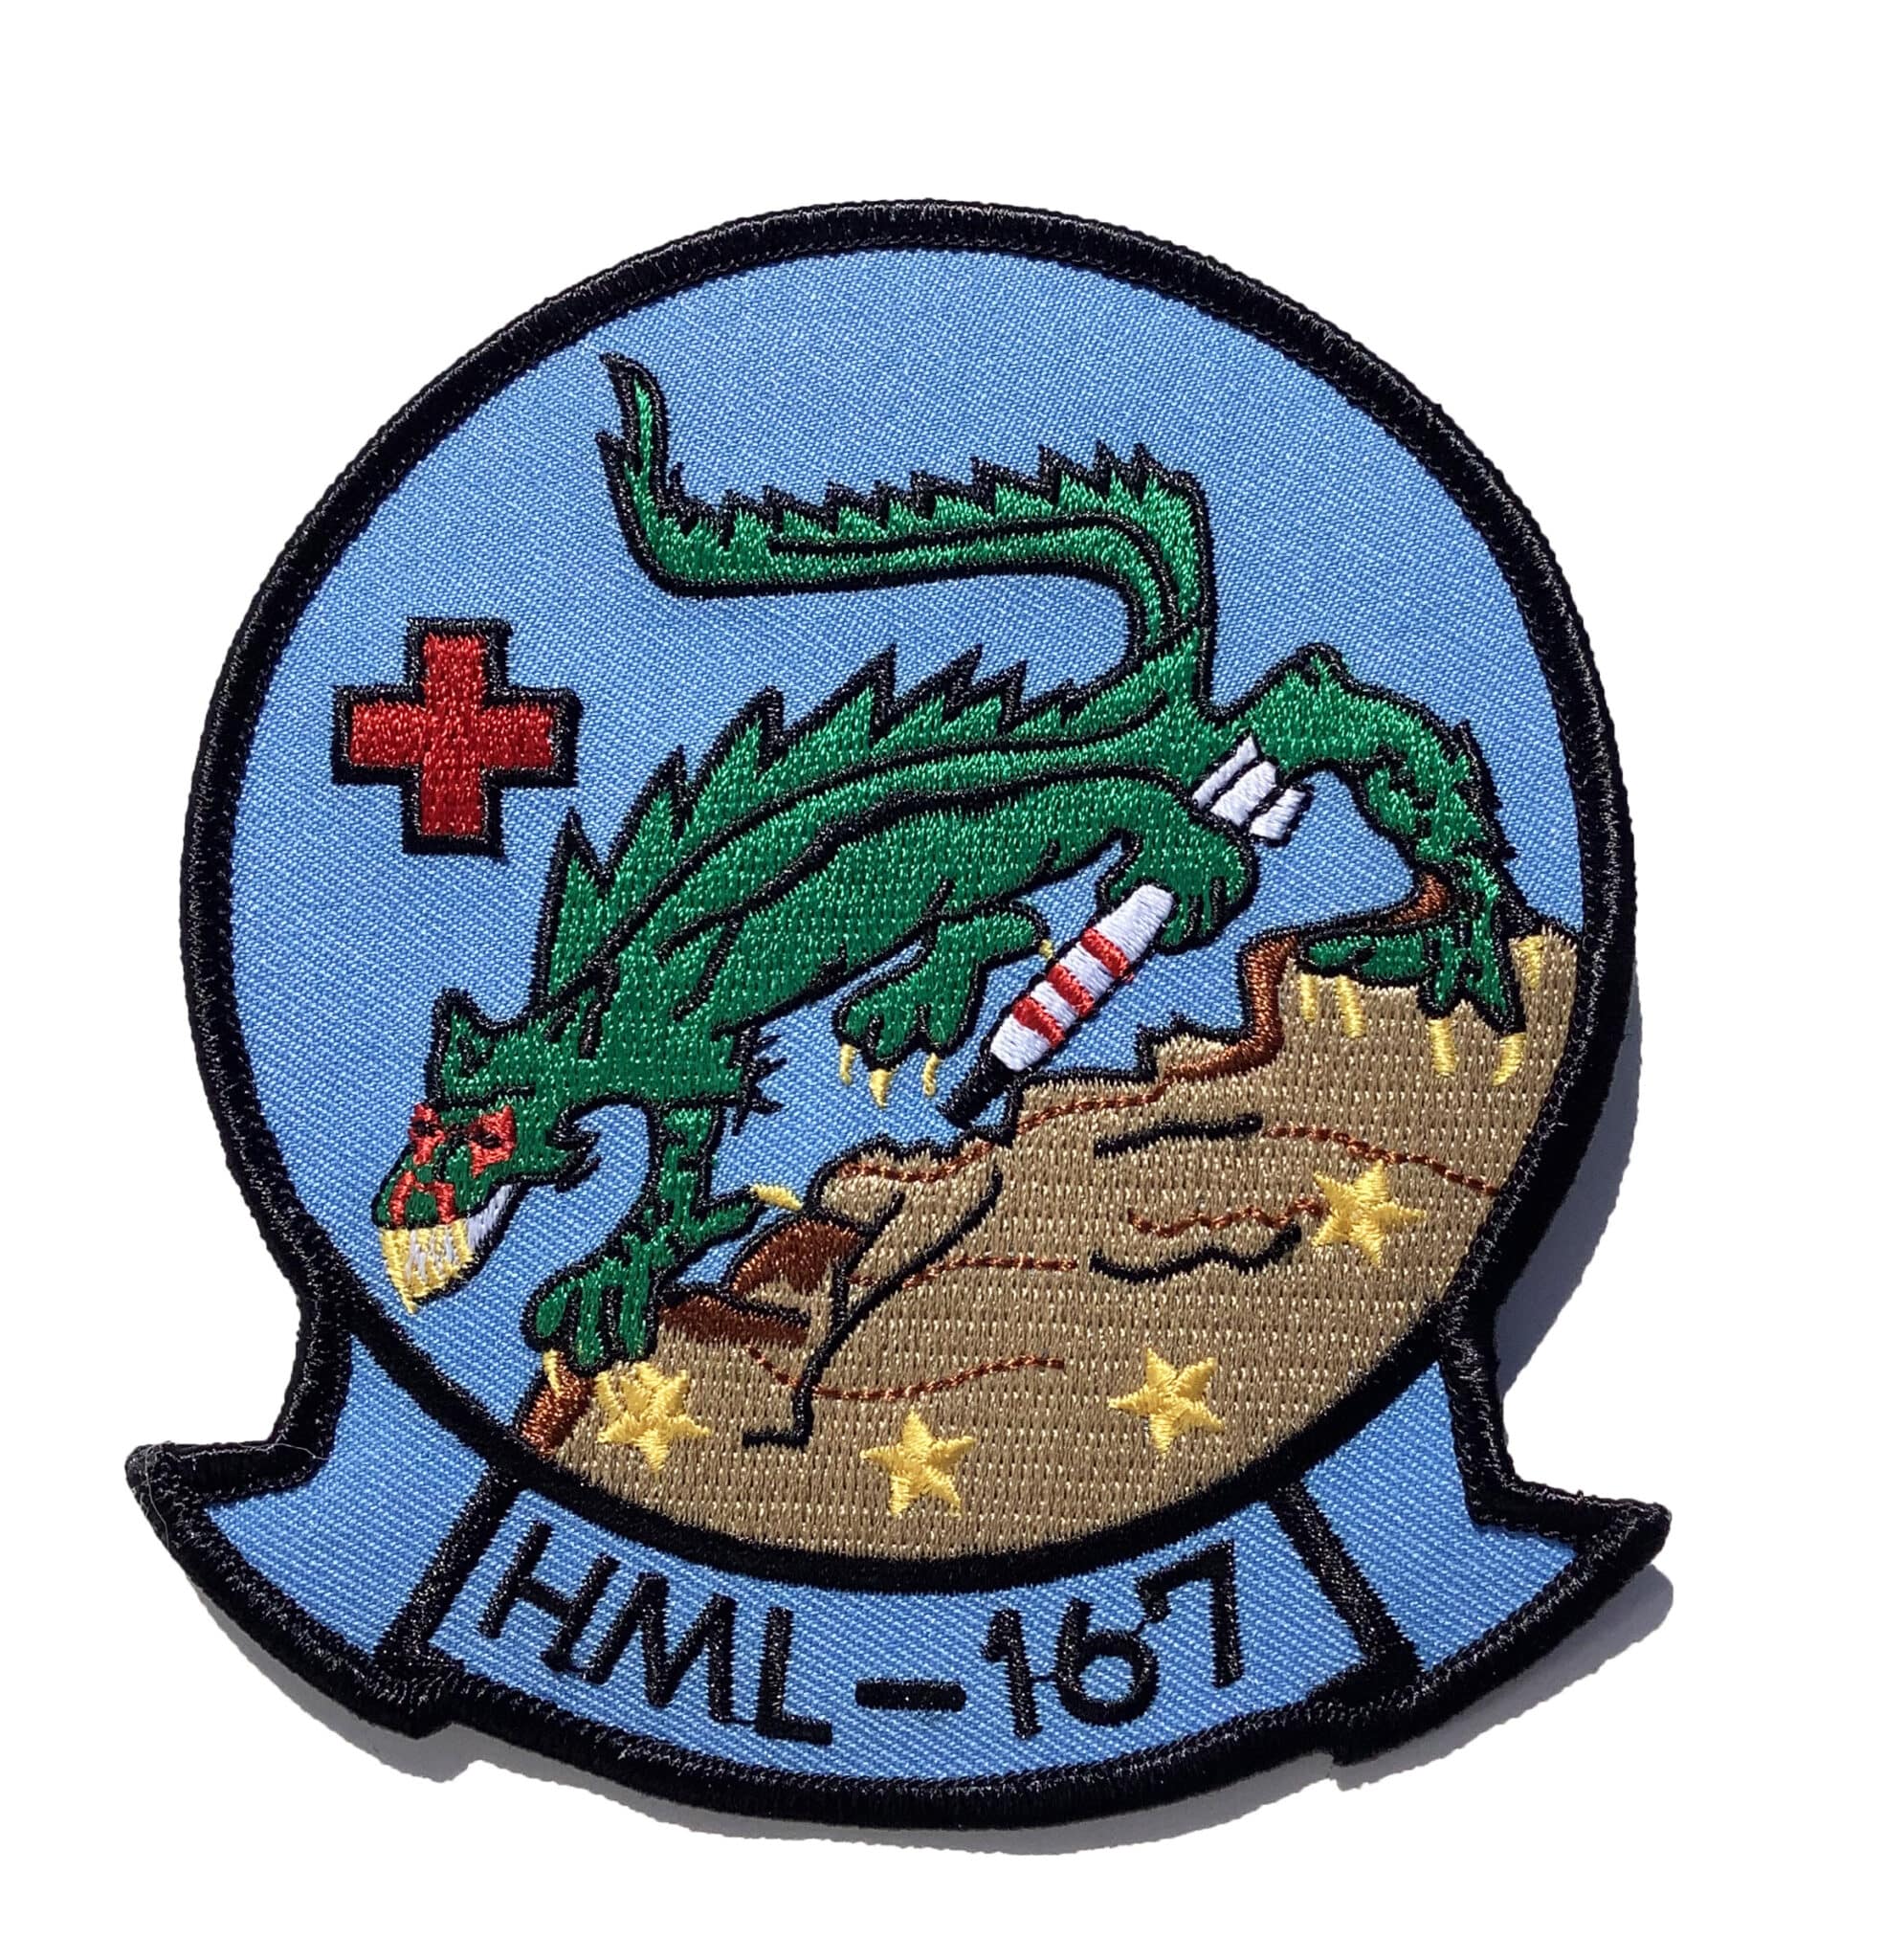 hml-167-warriors-patch-sew-on-squadron-nostalgia-llc